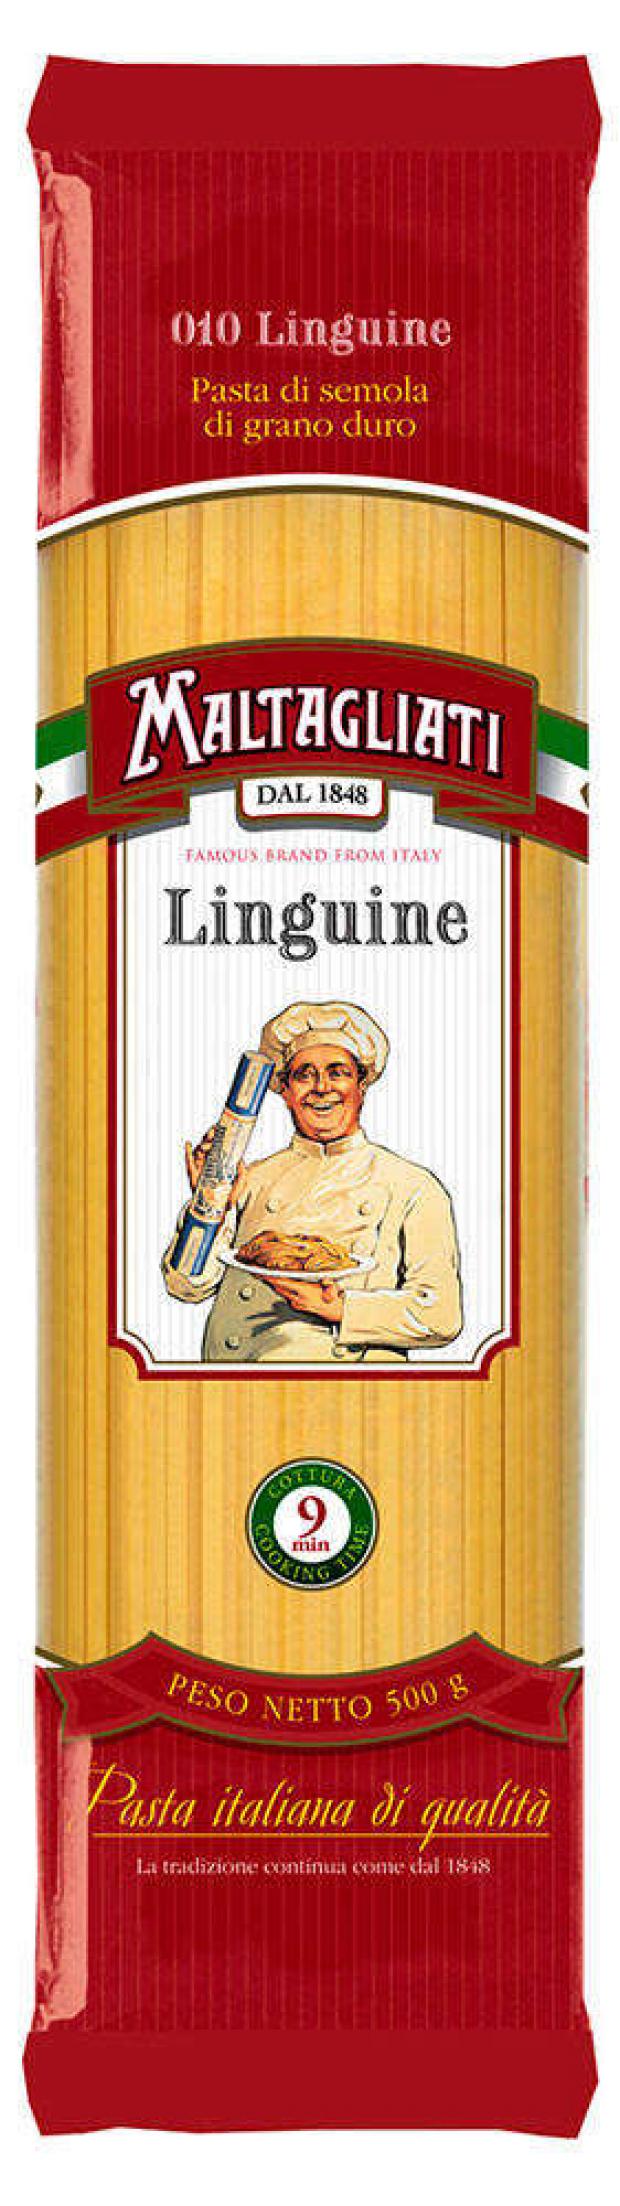 Лапша Maltagliati №10 Linguine длинная, 500 г макаронные изделия maltagliati 96 pipe rigate рожок крупный 500 г